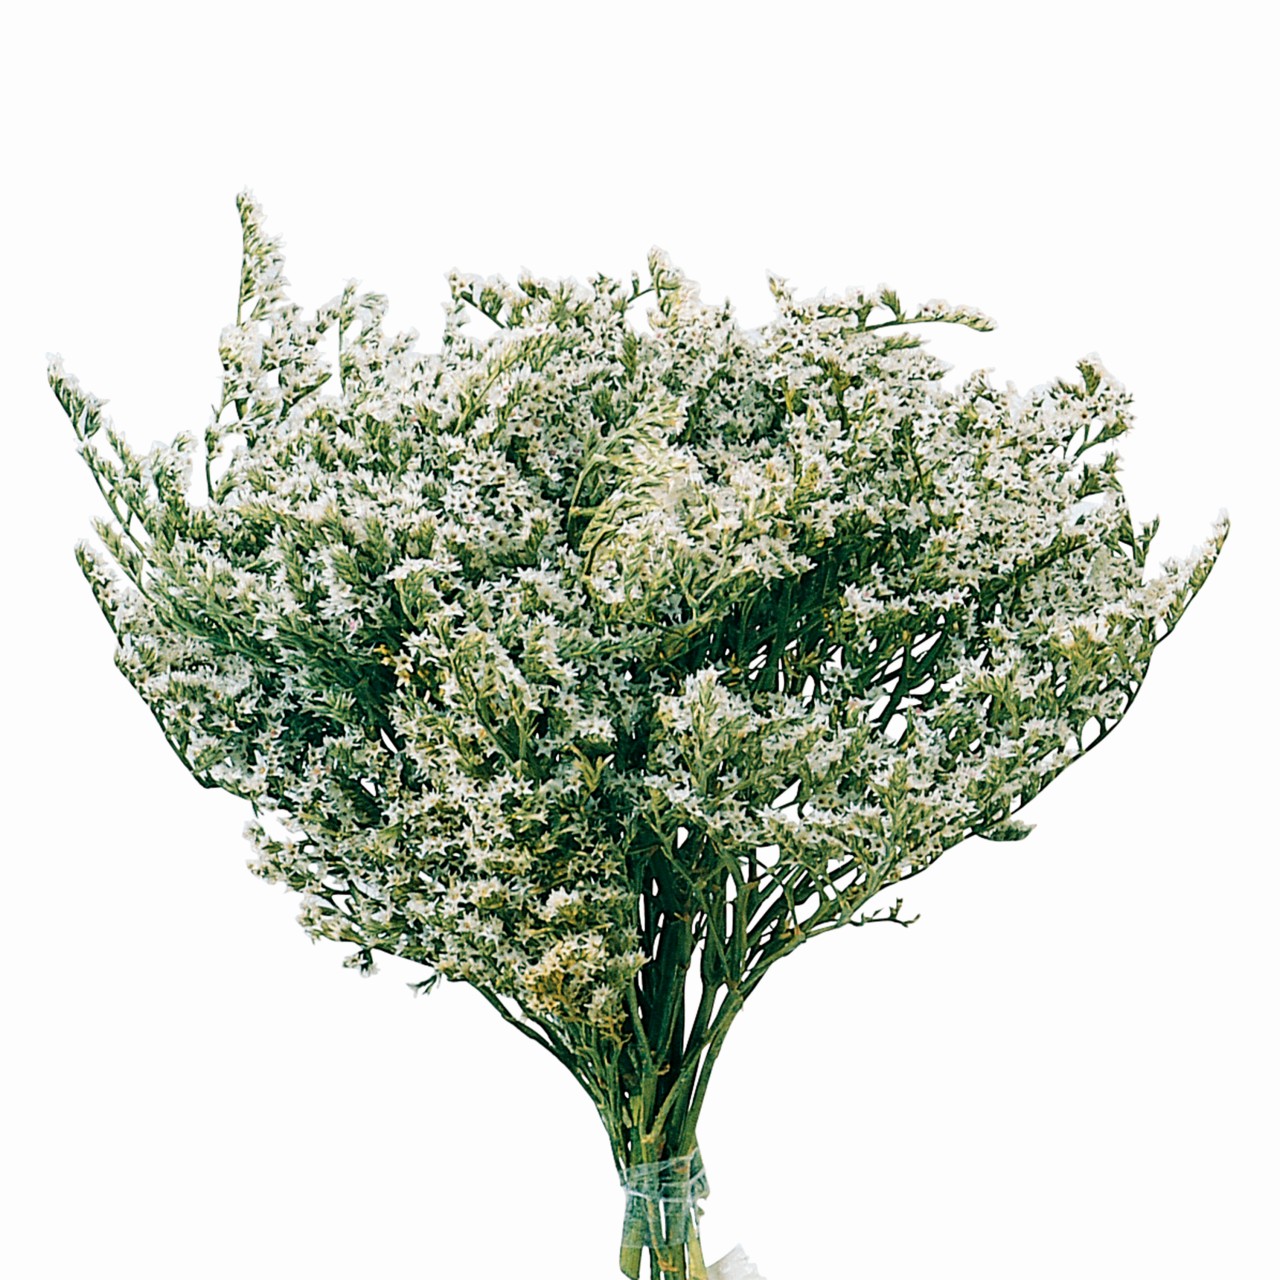 マイフラ 通販 風の花 タタリカ ドライフラワー 1束 Dn ナチュラル 長さ 約 35cm ドライフラワー ナチュラル 素材 全国にmagiq 花器 花資材などをお届けします